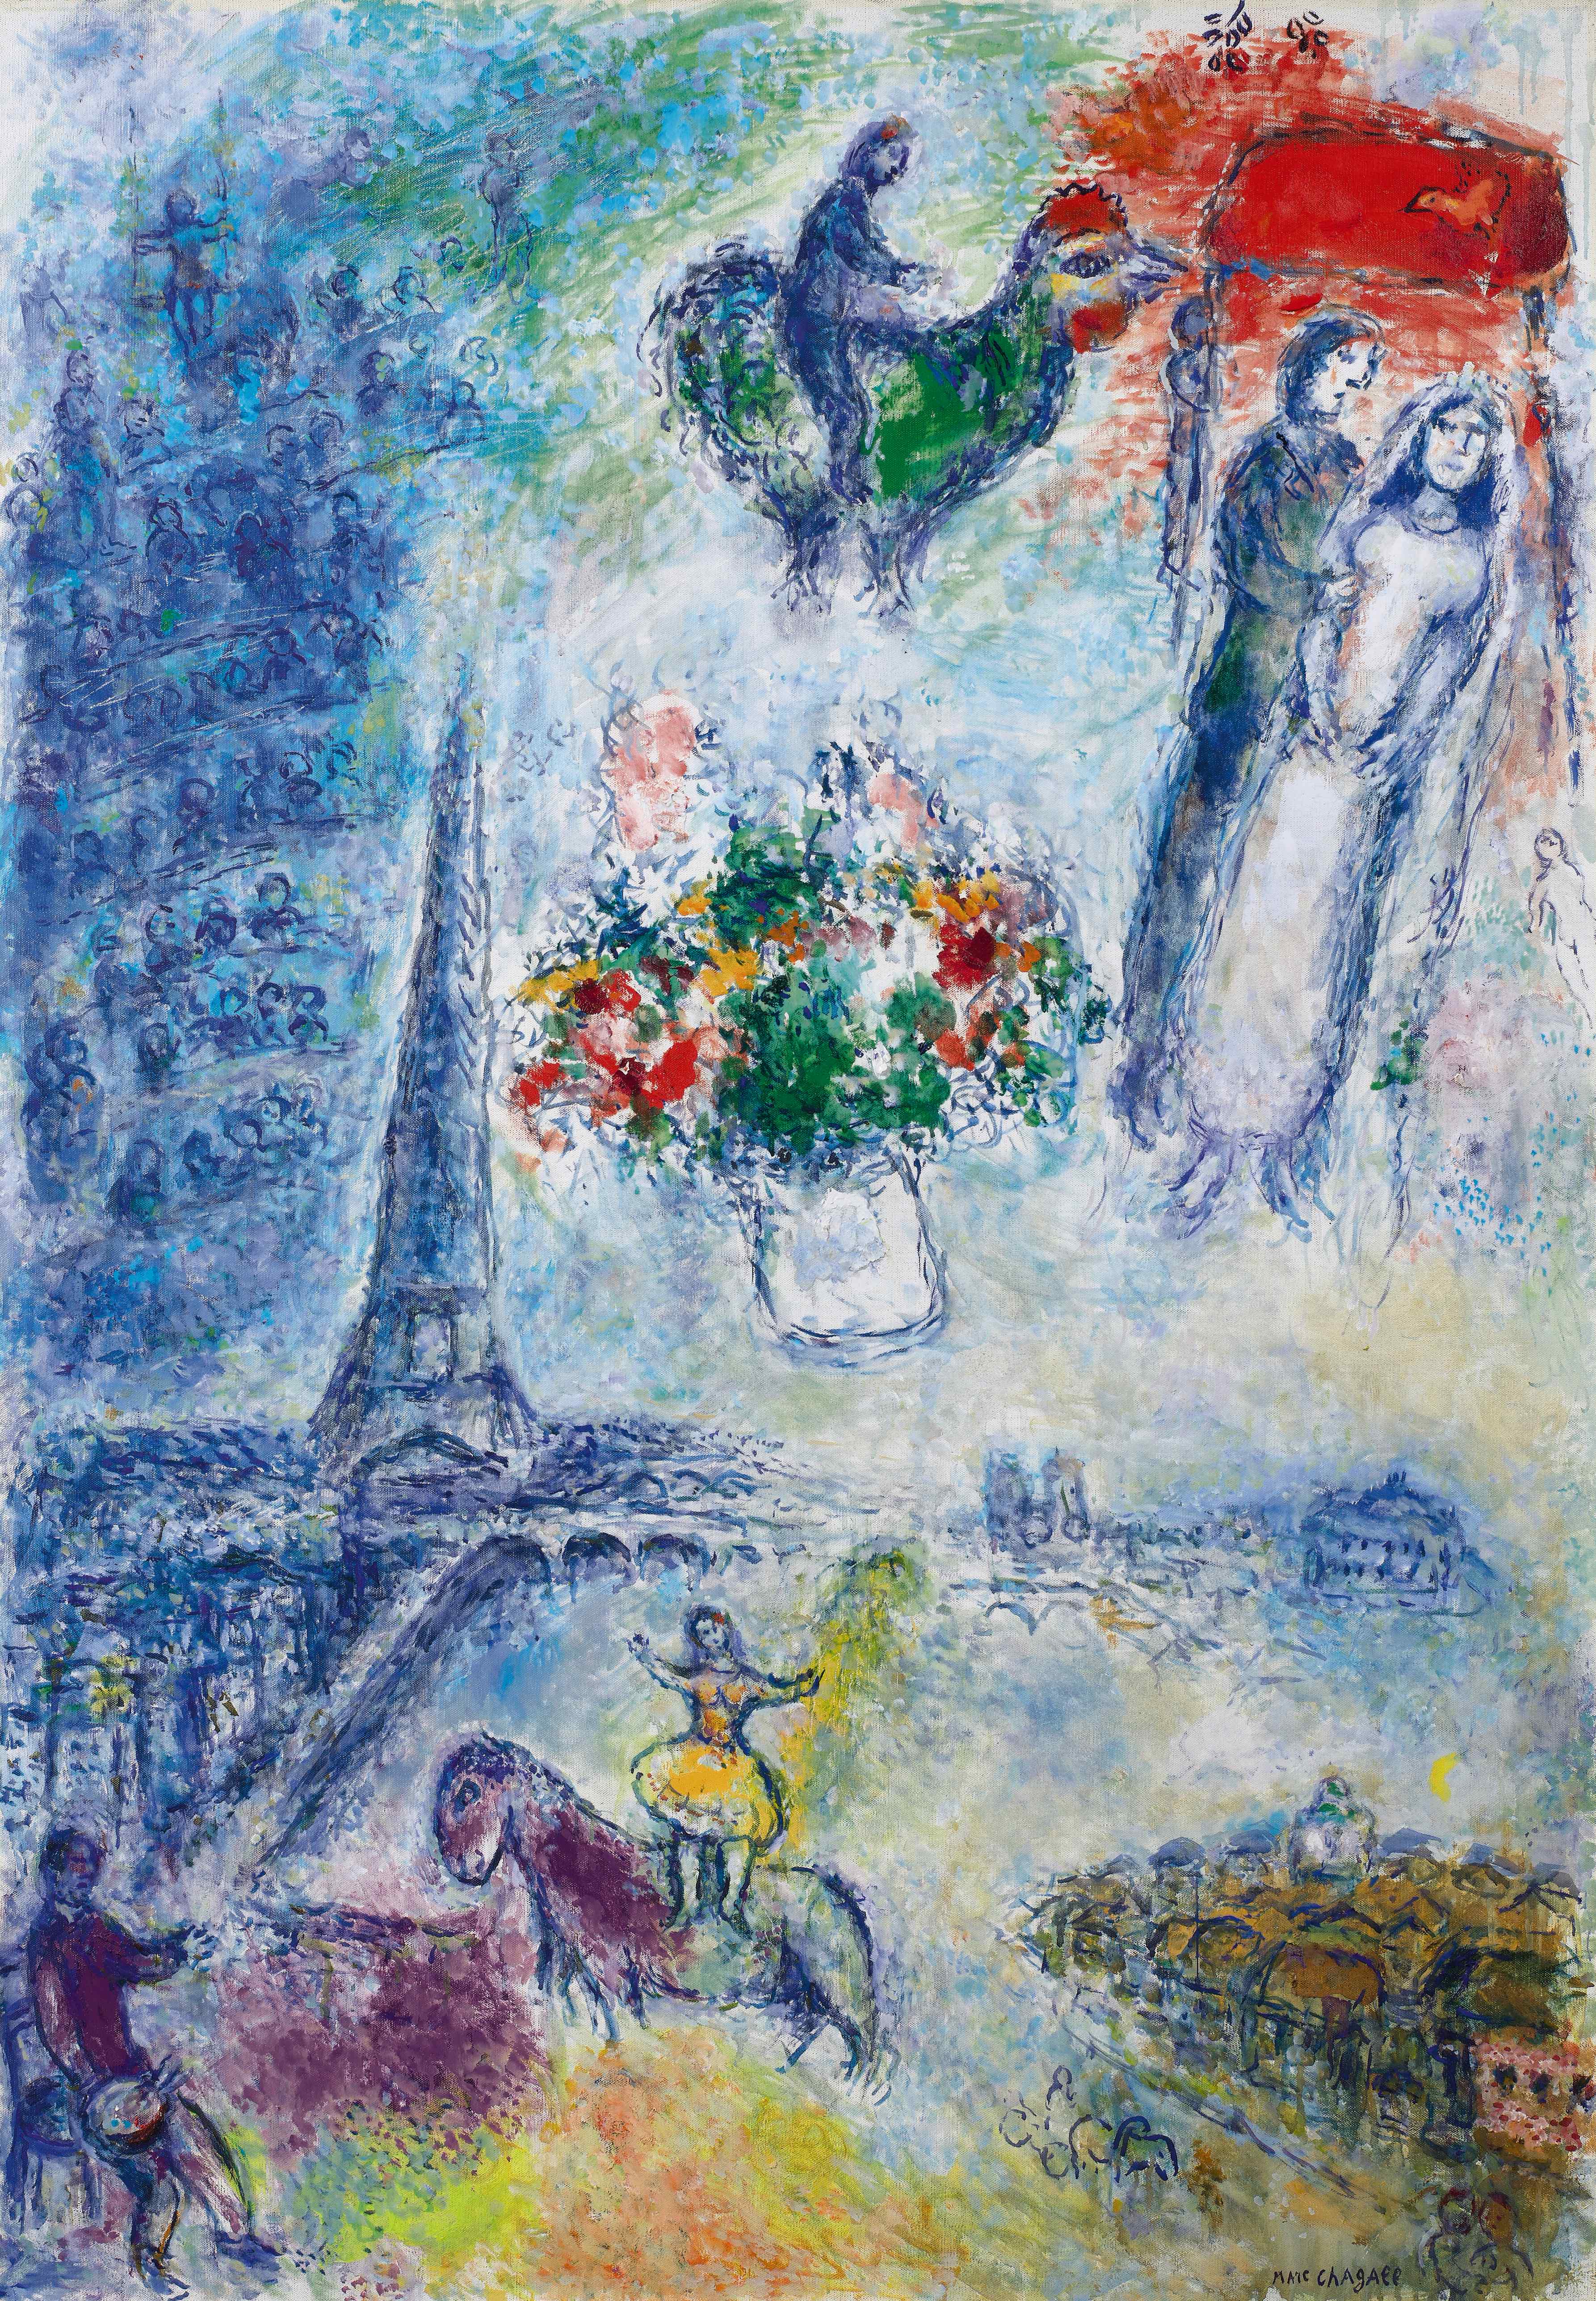 馬克·夏加爾 《巴黎天空下的戀人》 1980年作 油彩蛋彩畫布 圖/蘇富比提供